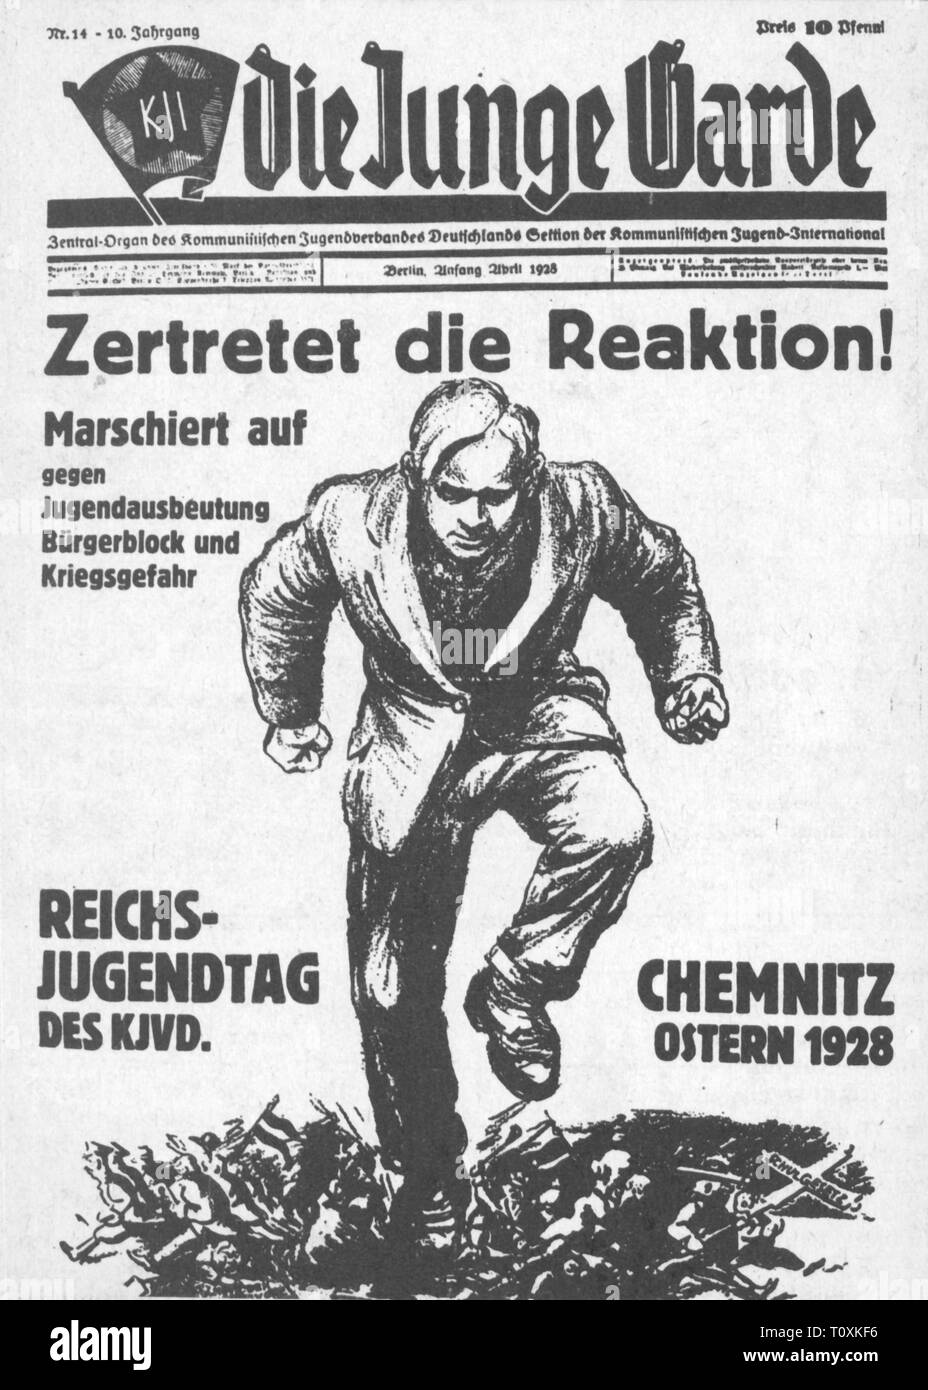 Presse/médias, magazines, die junge Garde' (la jeune garde), front page, 10e volume, numéro 14, Berlin, début avril 1928, l'artiste n'a pas d'auteur pour être effacé Banque D'Images